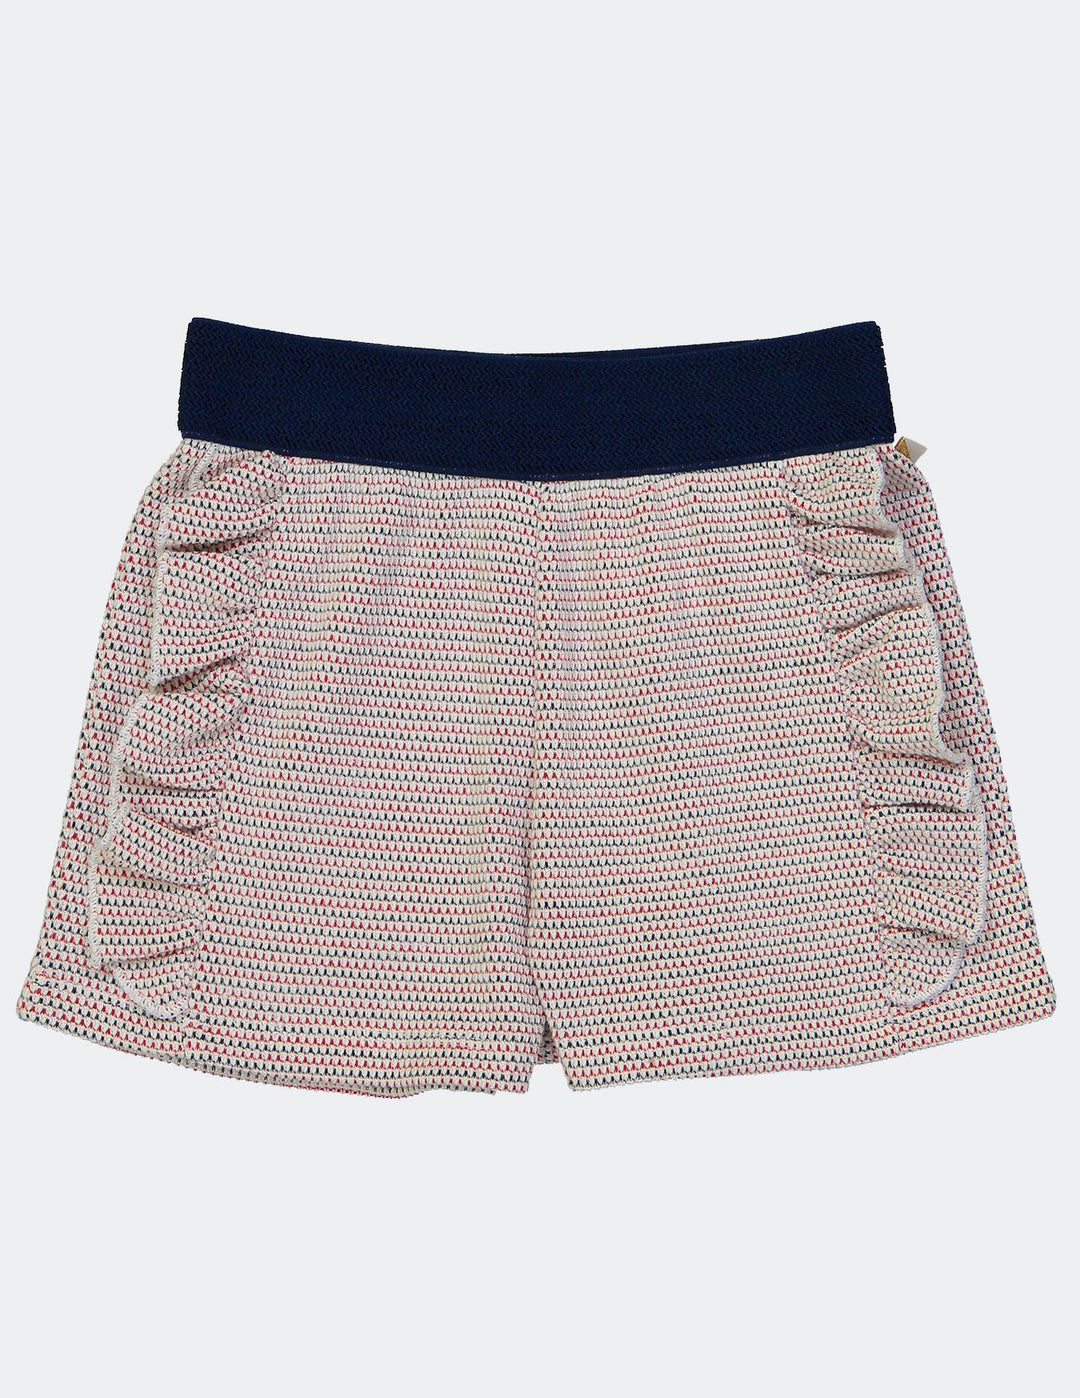 Blune - Kids Girl Ridio Crochet Short Pants - Navy/Fraise